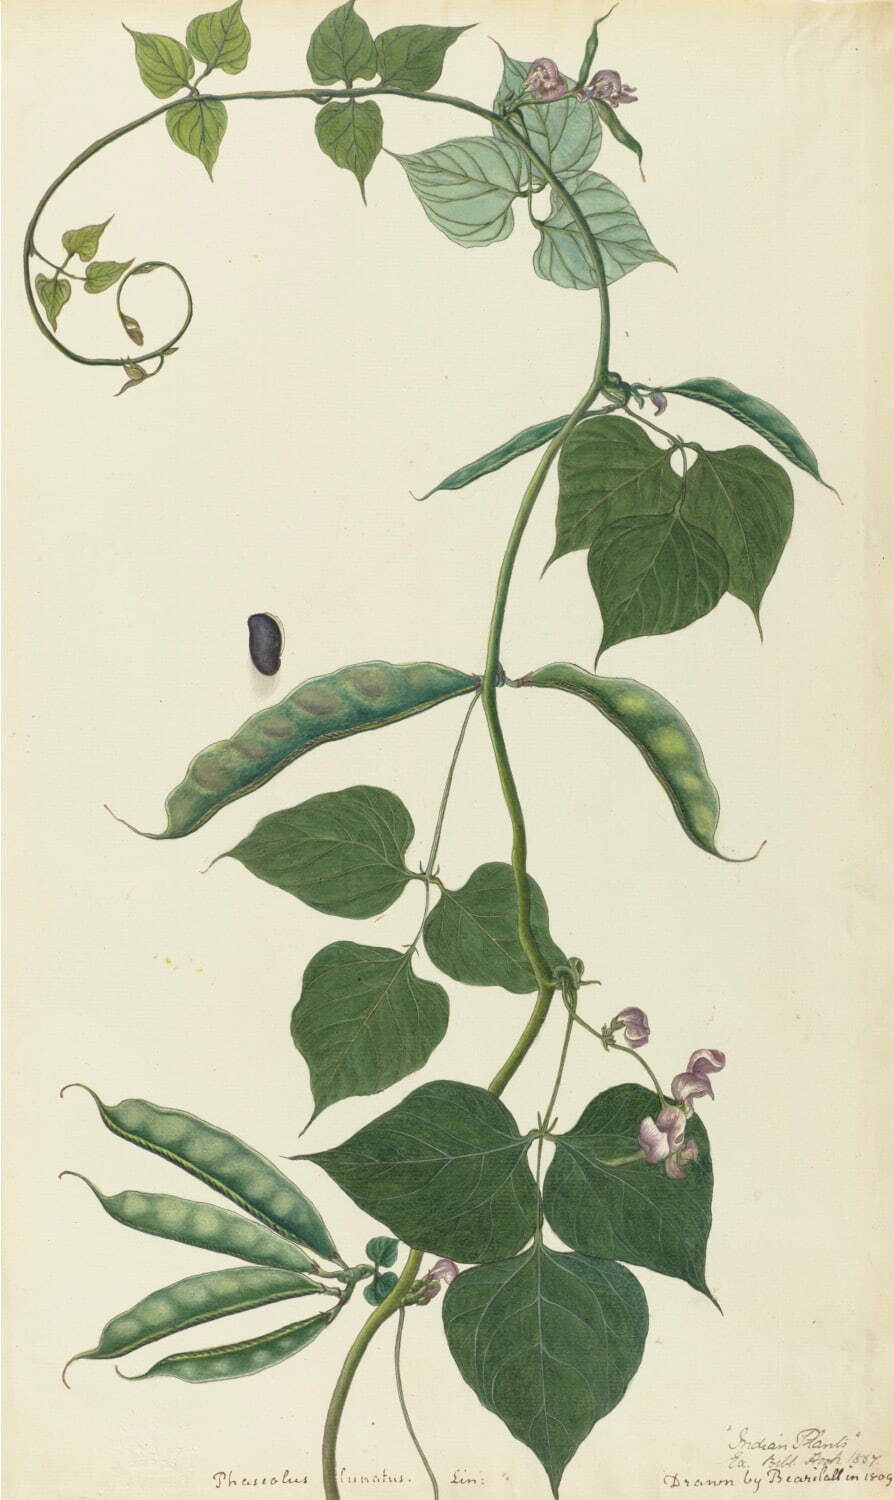 プヤレ・ラル 《ライ豆》 1809年 キュー王立植物園蔵
©︎RBG KEW